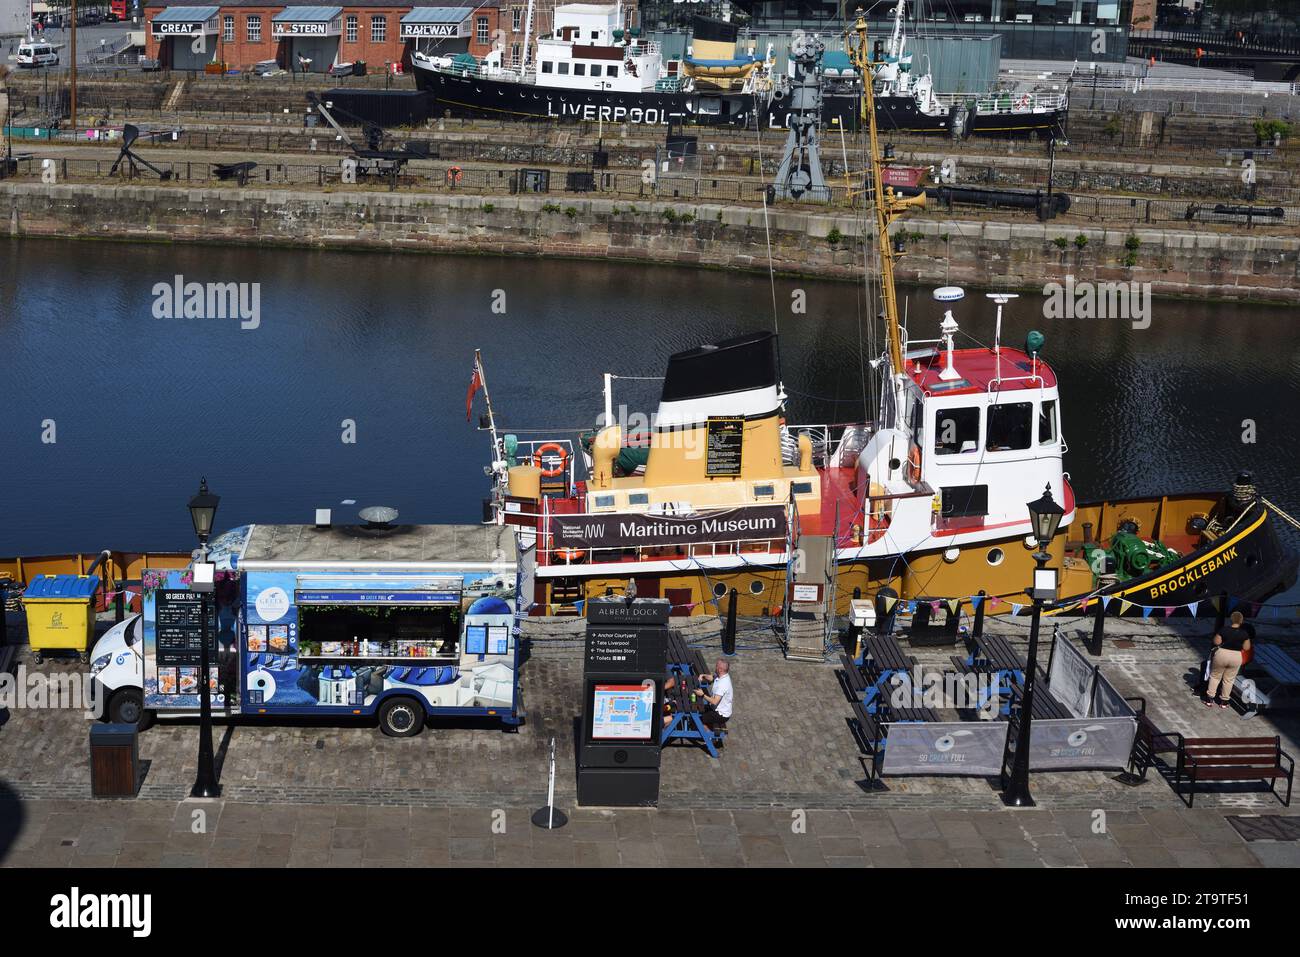 Street Food oder Food Truck an der Waterfront oder Pier Head, neben dem Maritime Museum, Liverpool England UK Stockfoto